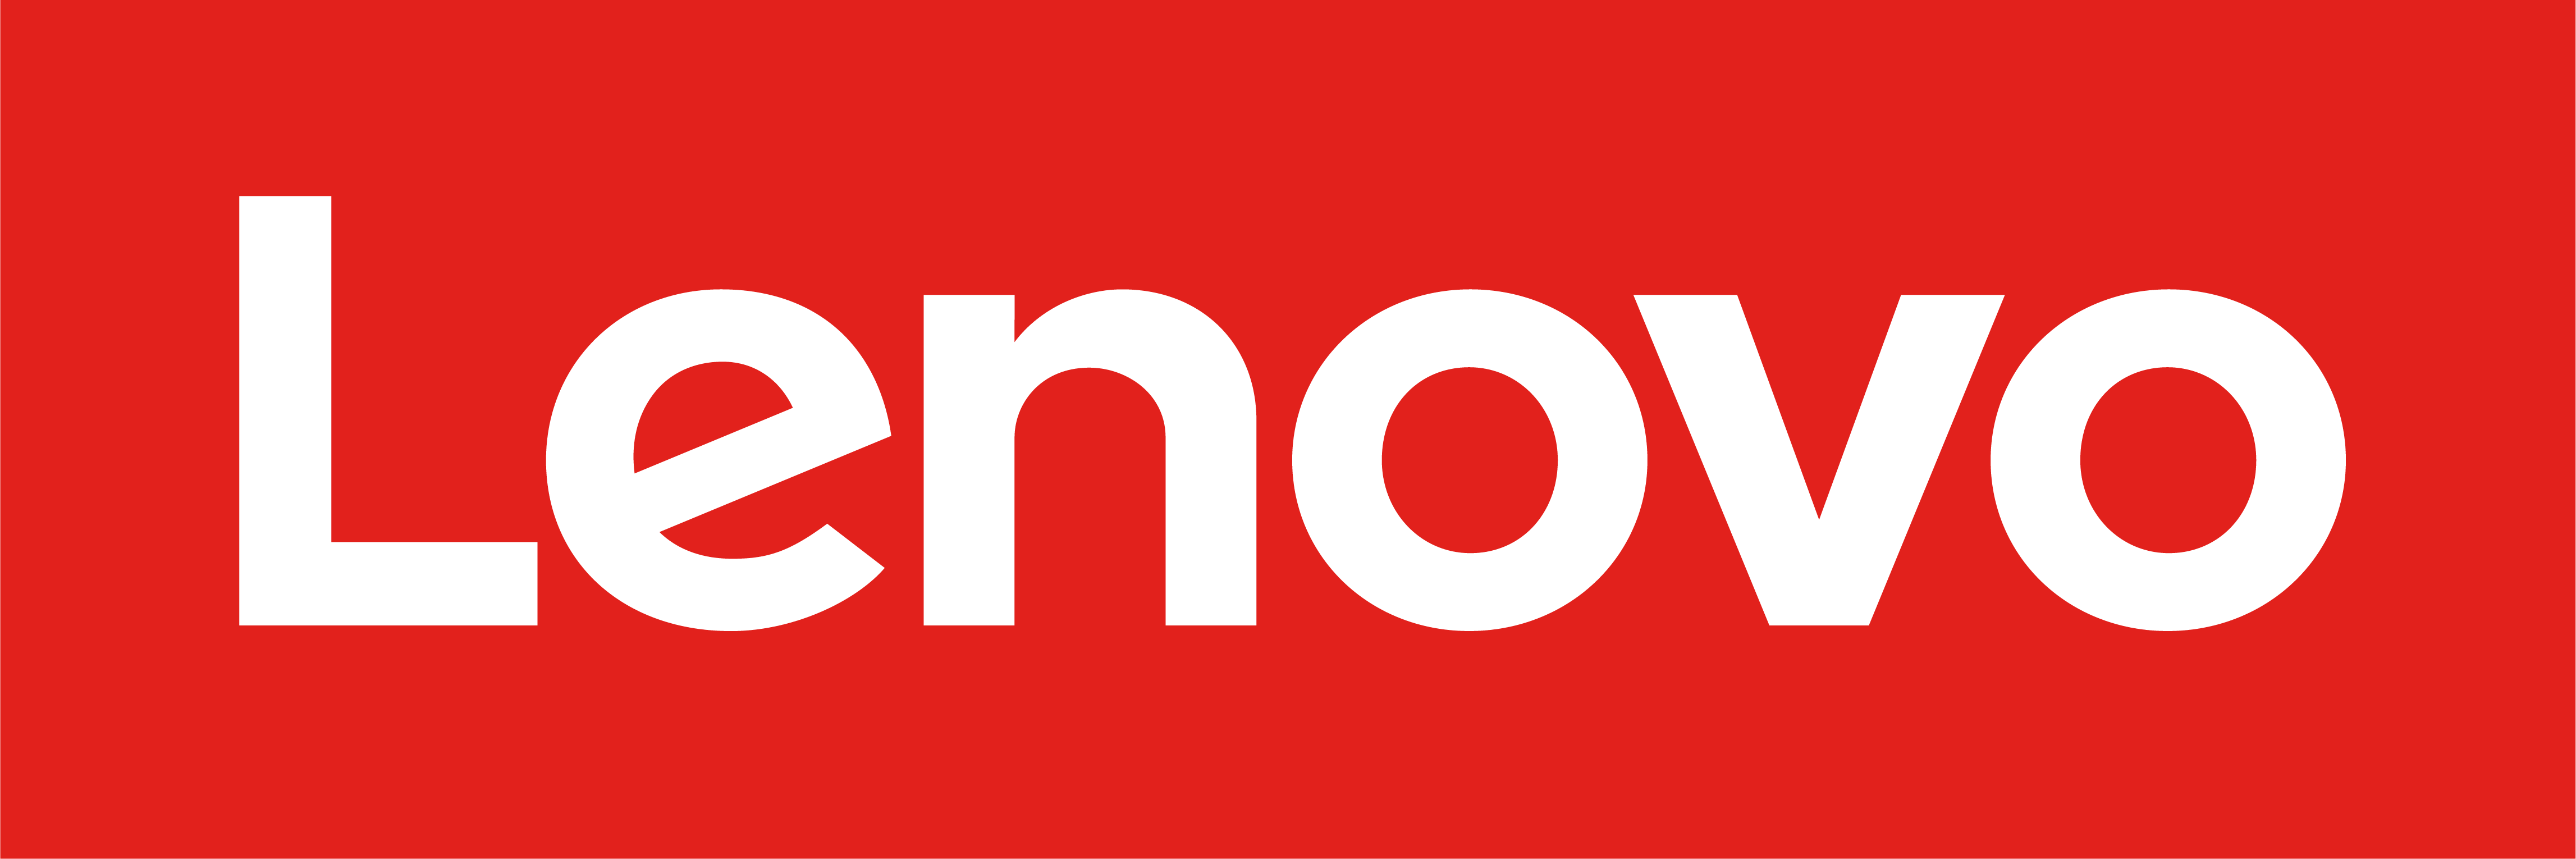 Lenovo & Polski Gaming